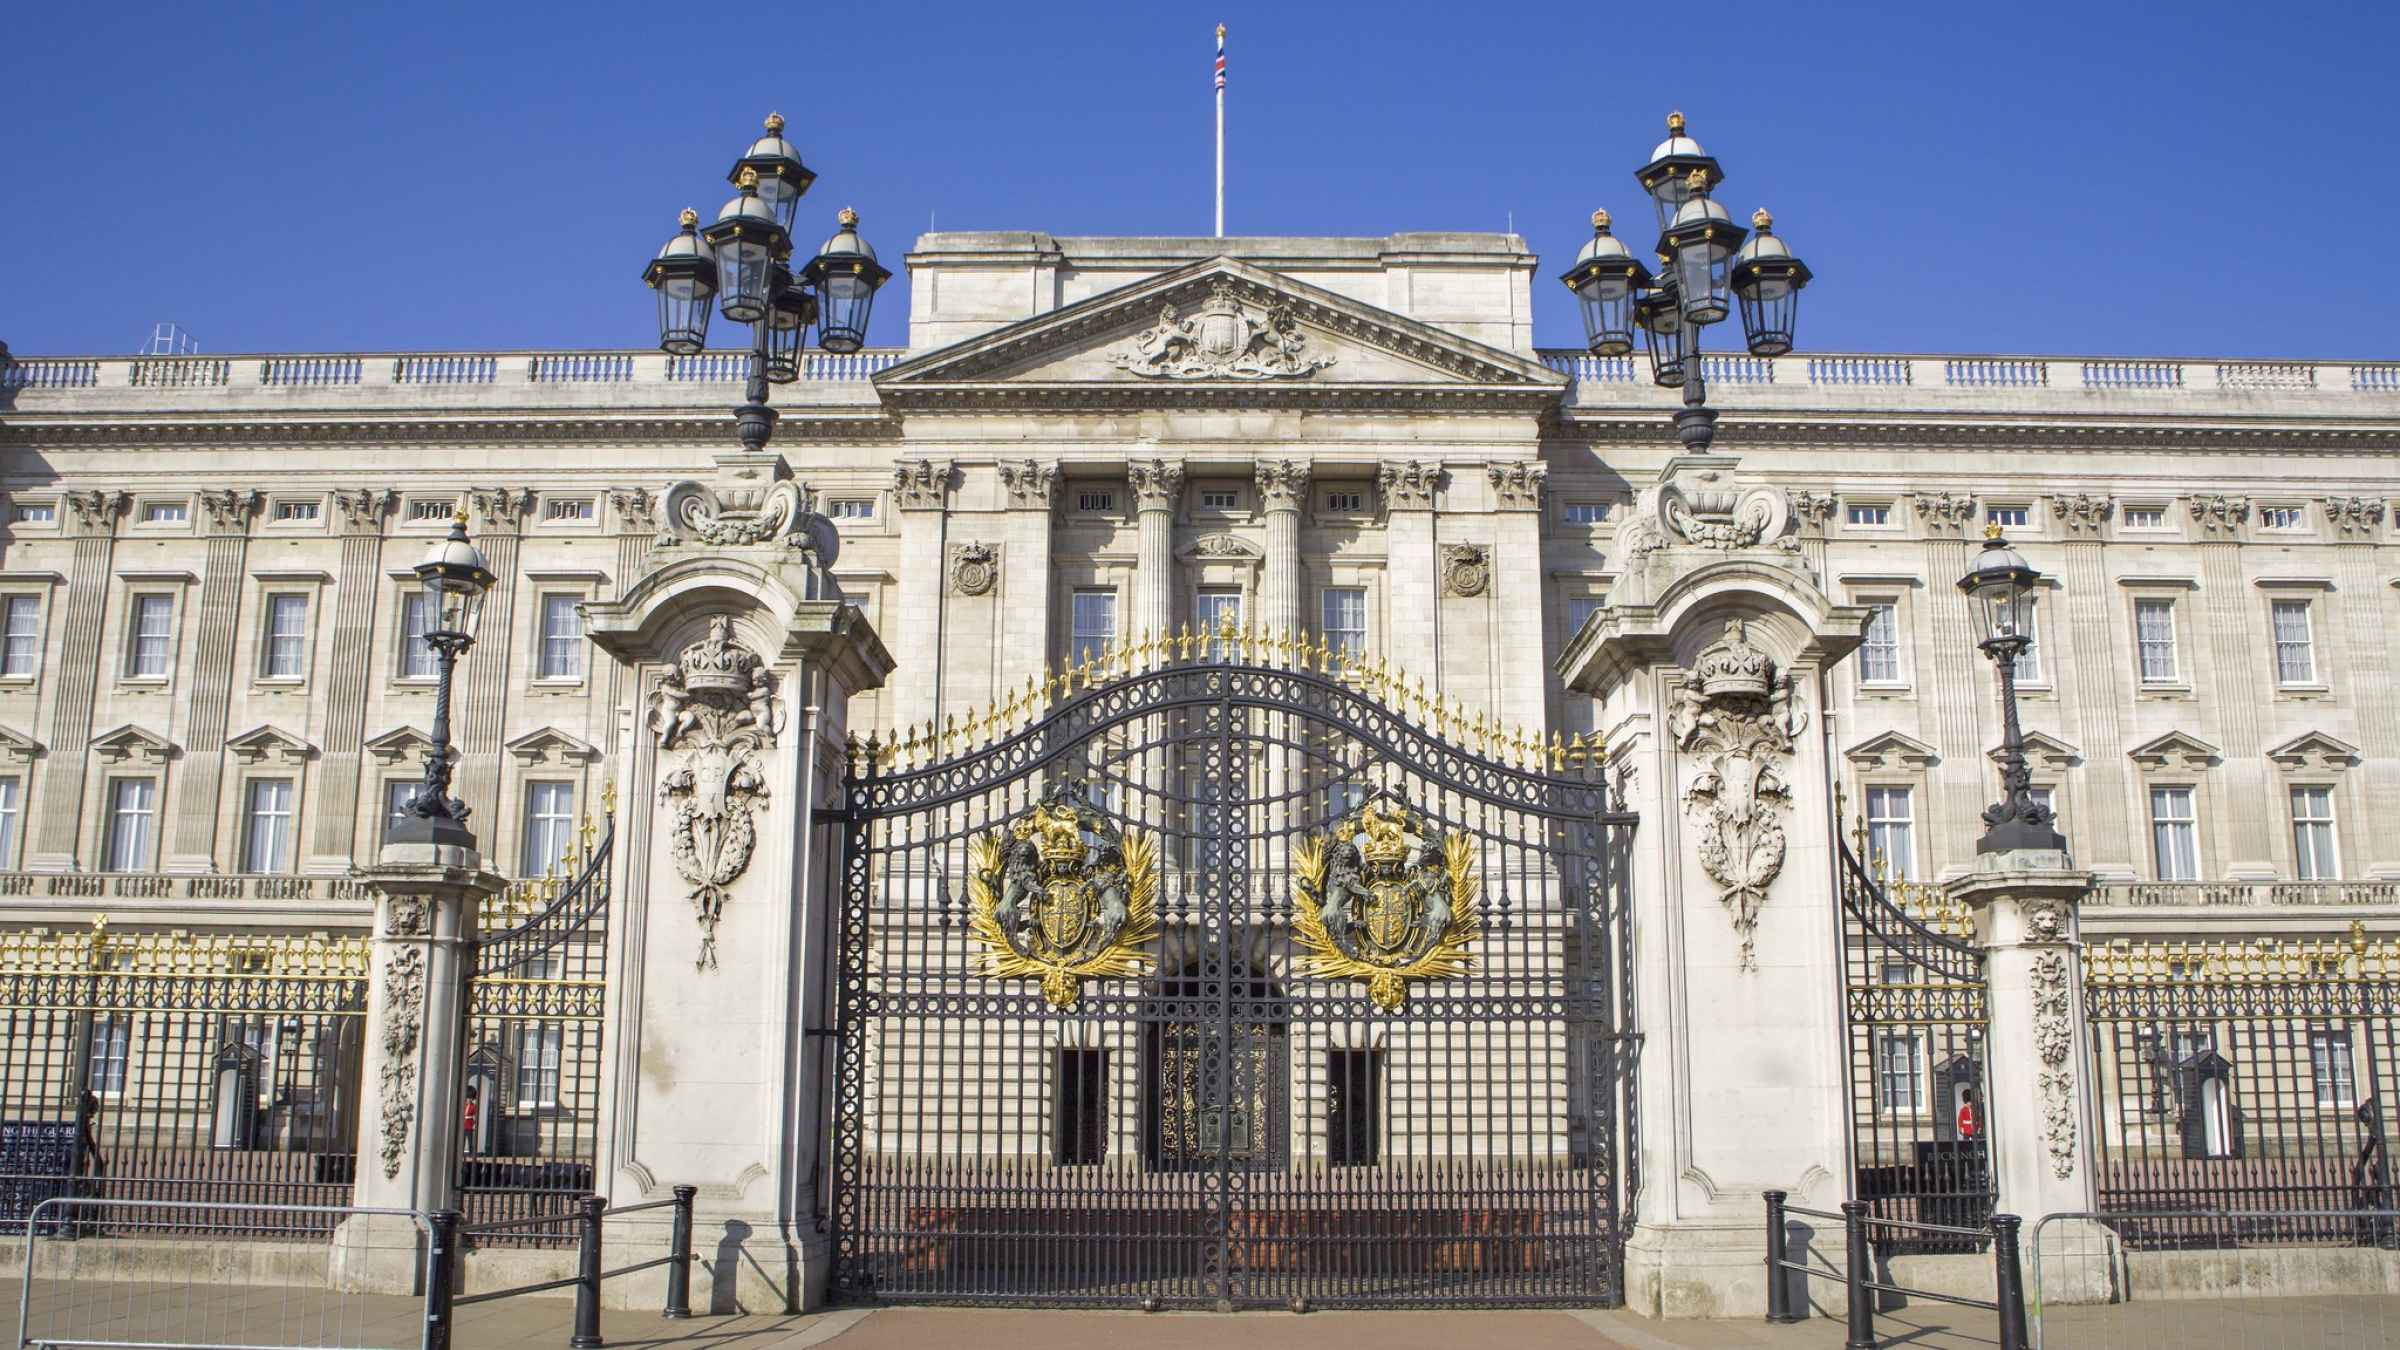 Buckingham Palace i London Bestil billetter til dit besøg